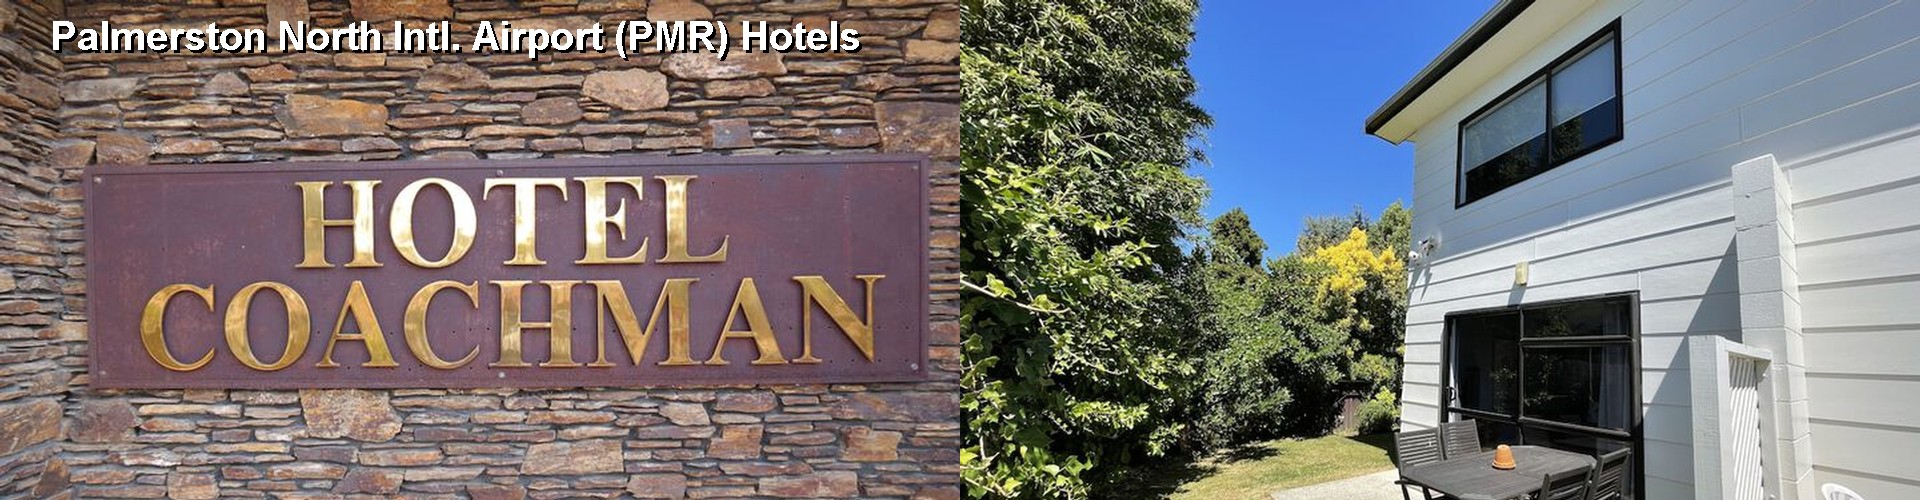 4 Best Hotels near Palmerston North Intl. Airport (PMR)